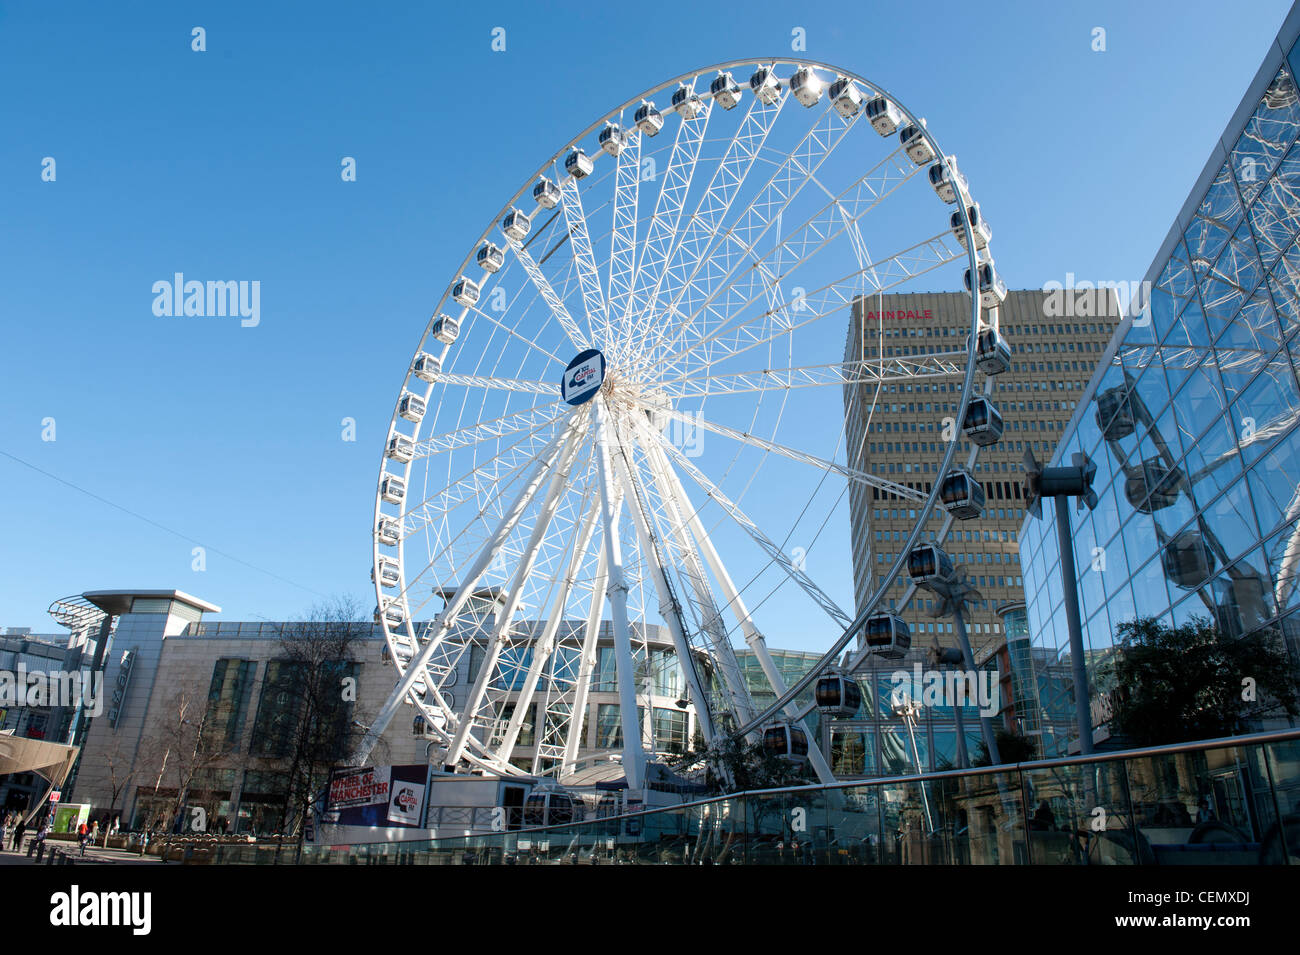 Das Rad von Manchester öffentlichen Riesenrad im Gegenzug Platz an einem sonnigen Tag. Stockfoto